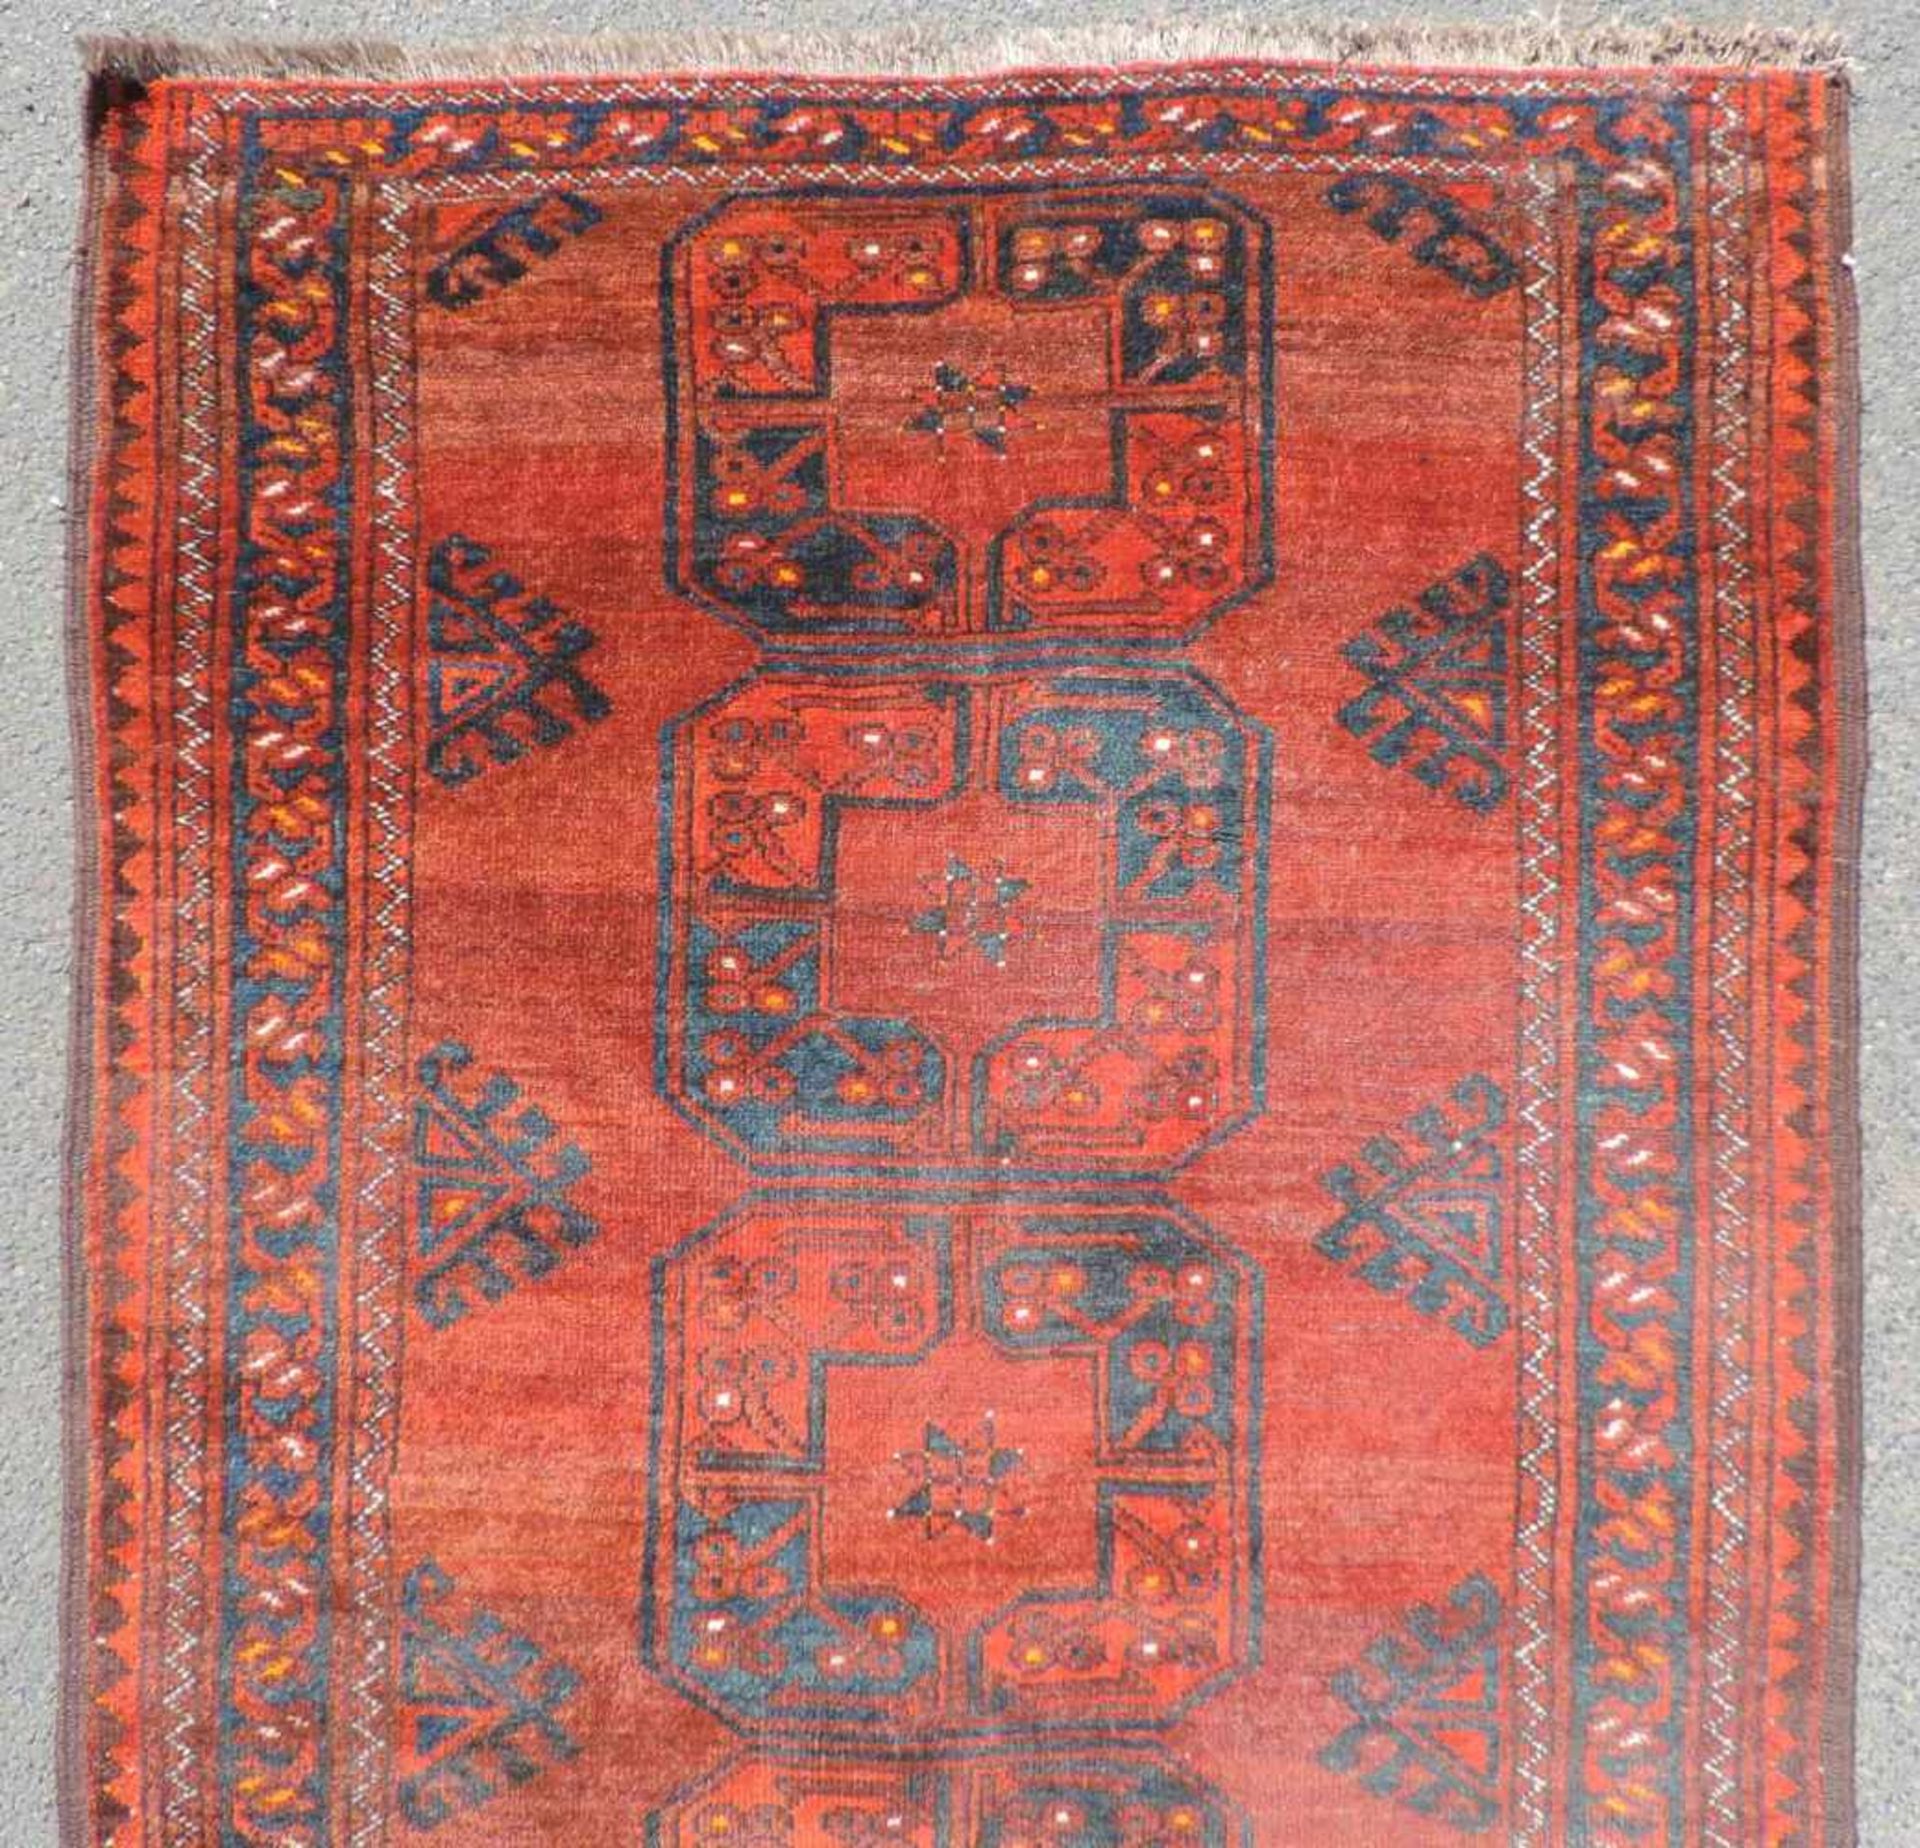 Ersari Stammesteppich. Turkmenistan. Antik um 1910. 193 cm x 102 cm. Orientteppich. Handgeknüpft. - Bild 4 aus 5